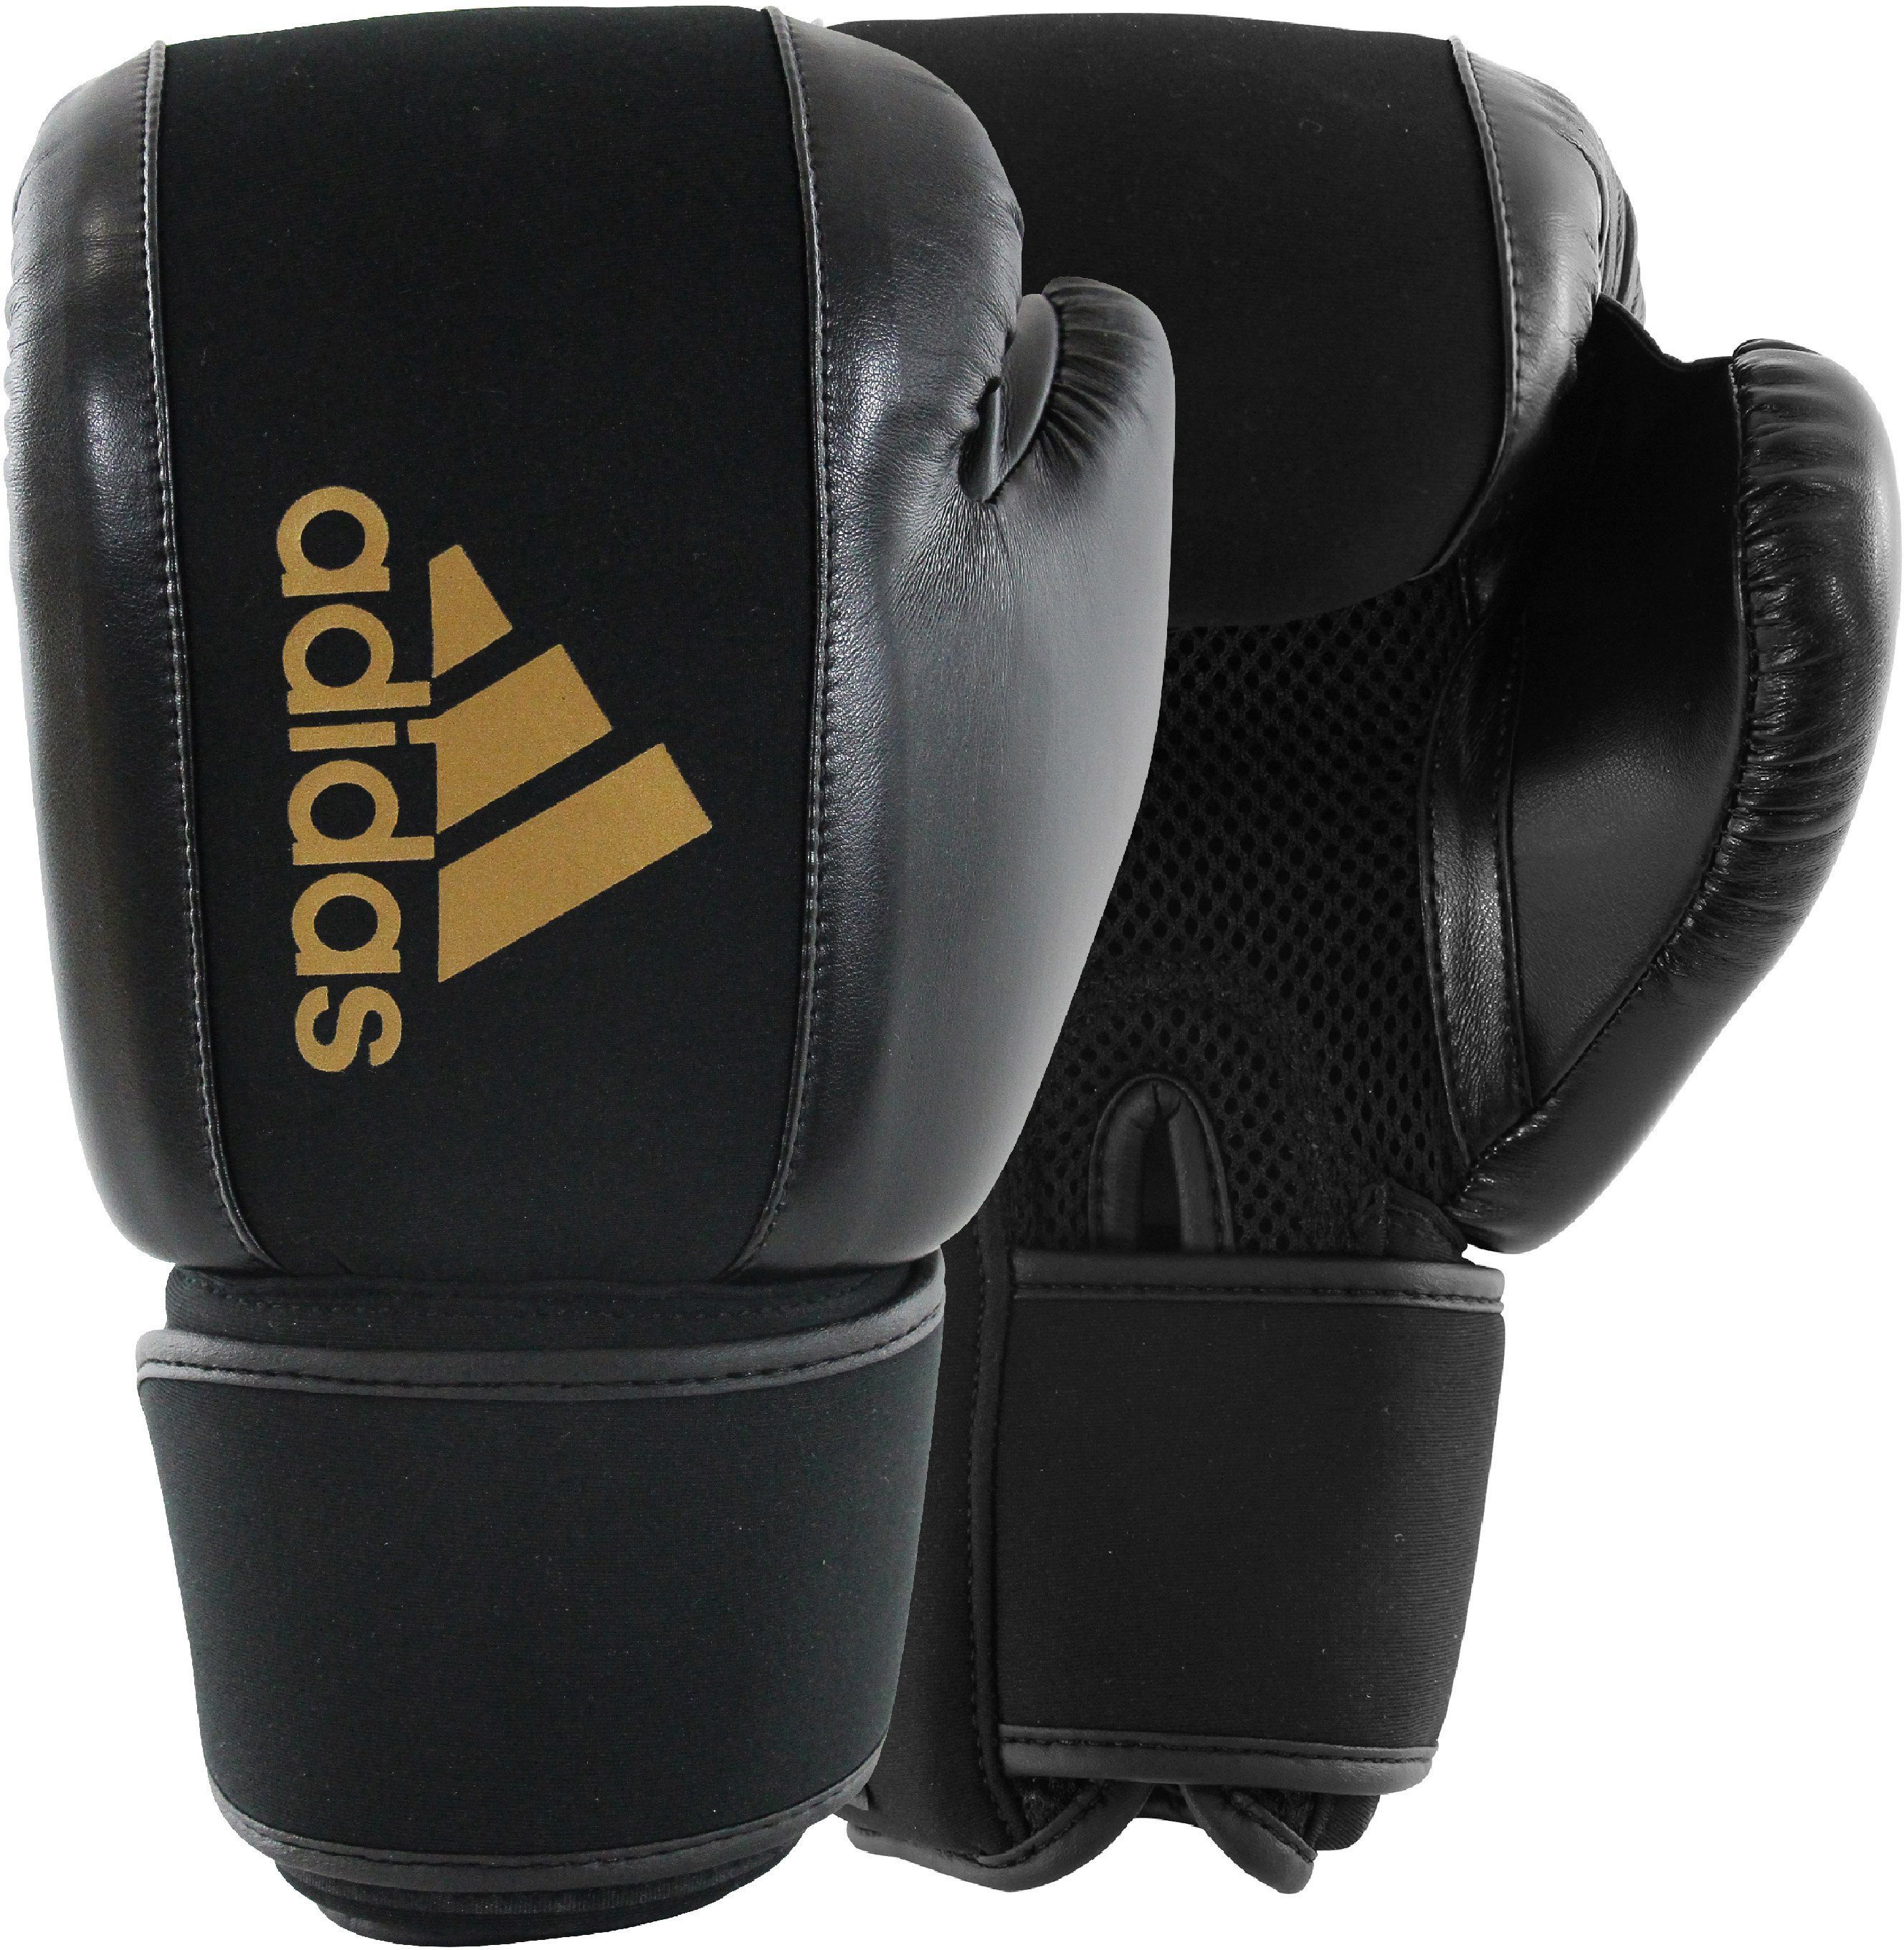 Gloves Performance adidas Boxing Boxhandschuhe Washable